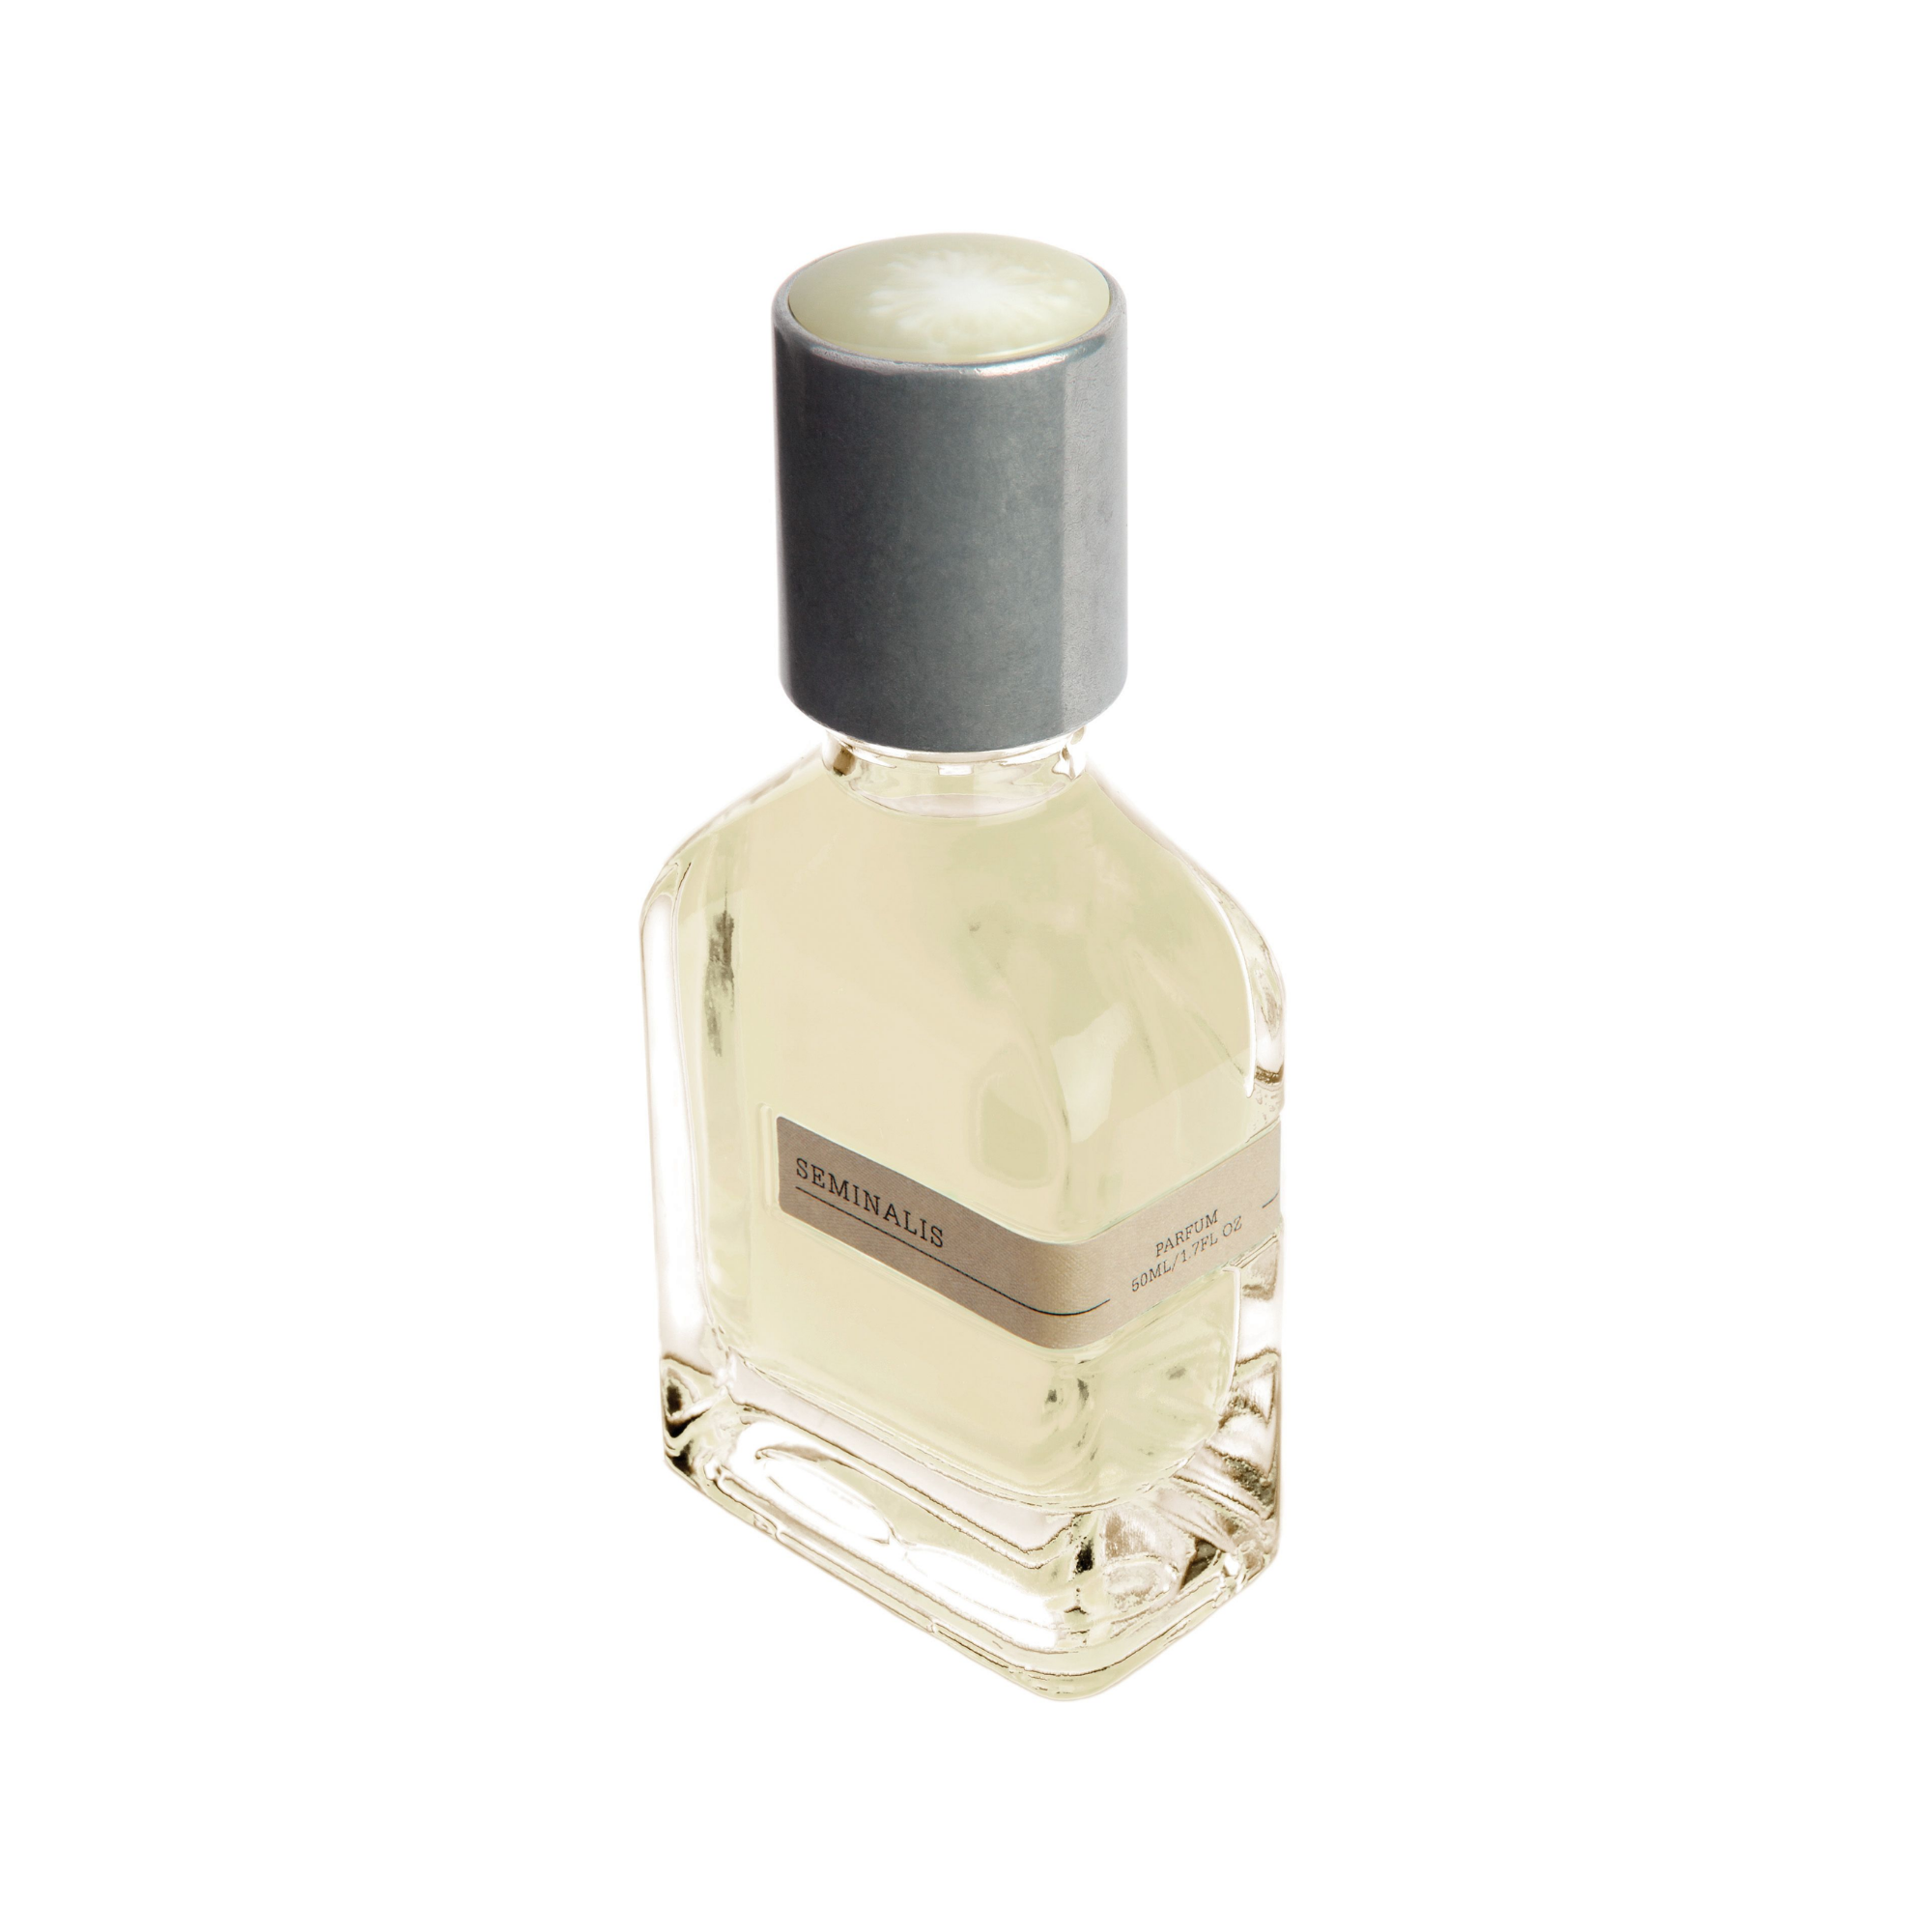 Seminalis Parfum Extract 50ml - Lore Perfumery